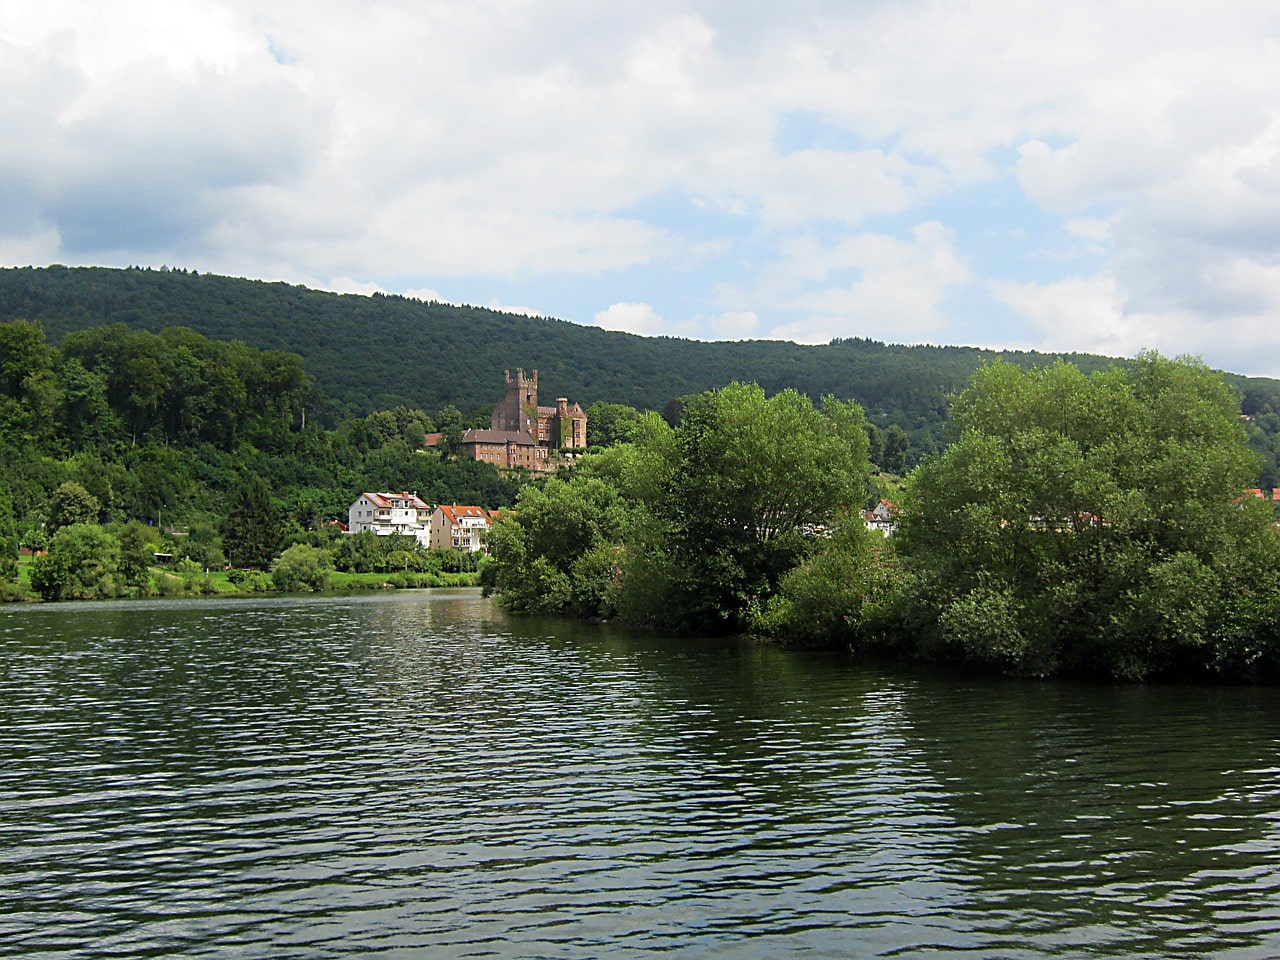 Angeln am Neckar